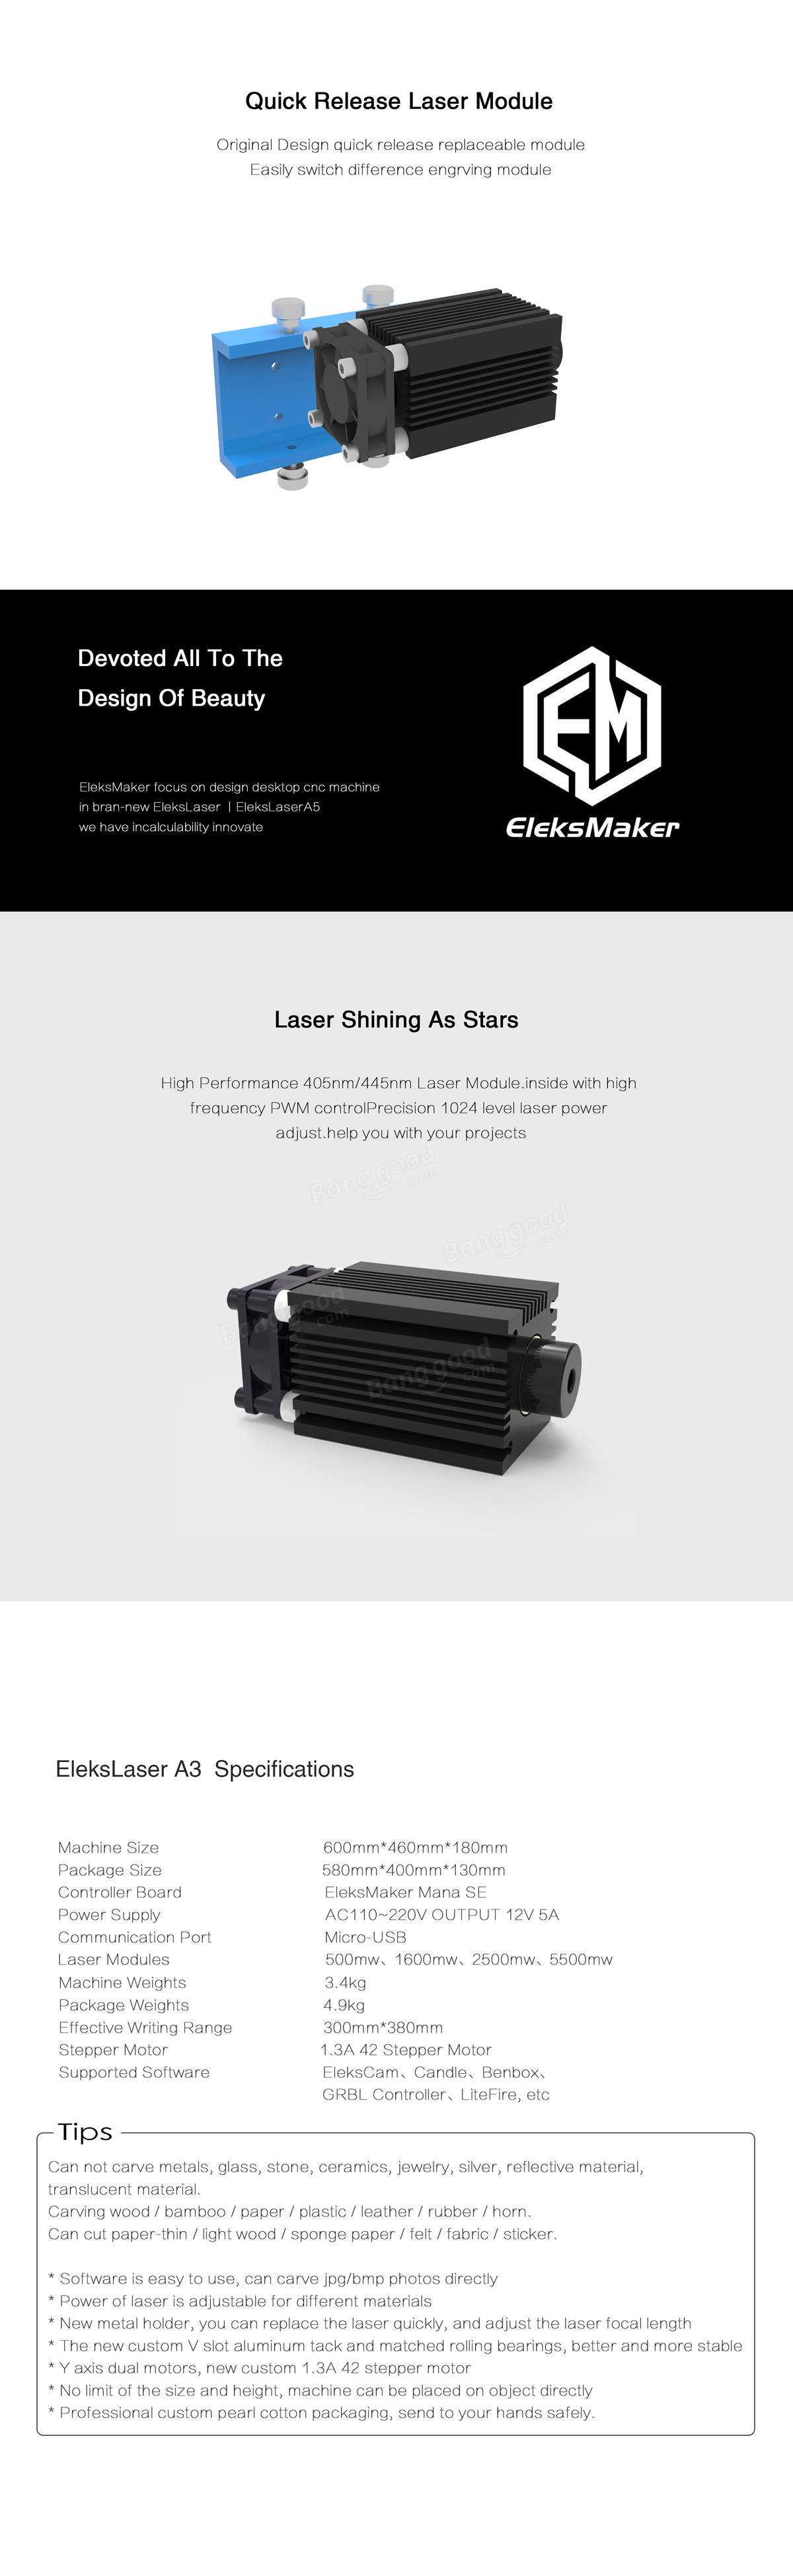 EleksMaker® EleksLaser-A3 Pro 5500mW Laser Engraving Machine CNC Laser Printer